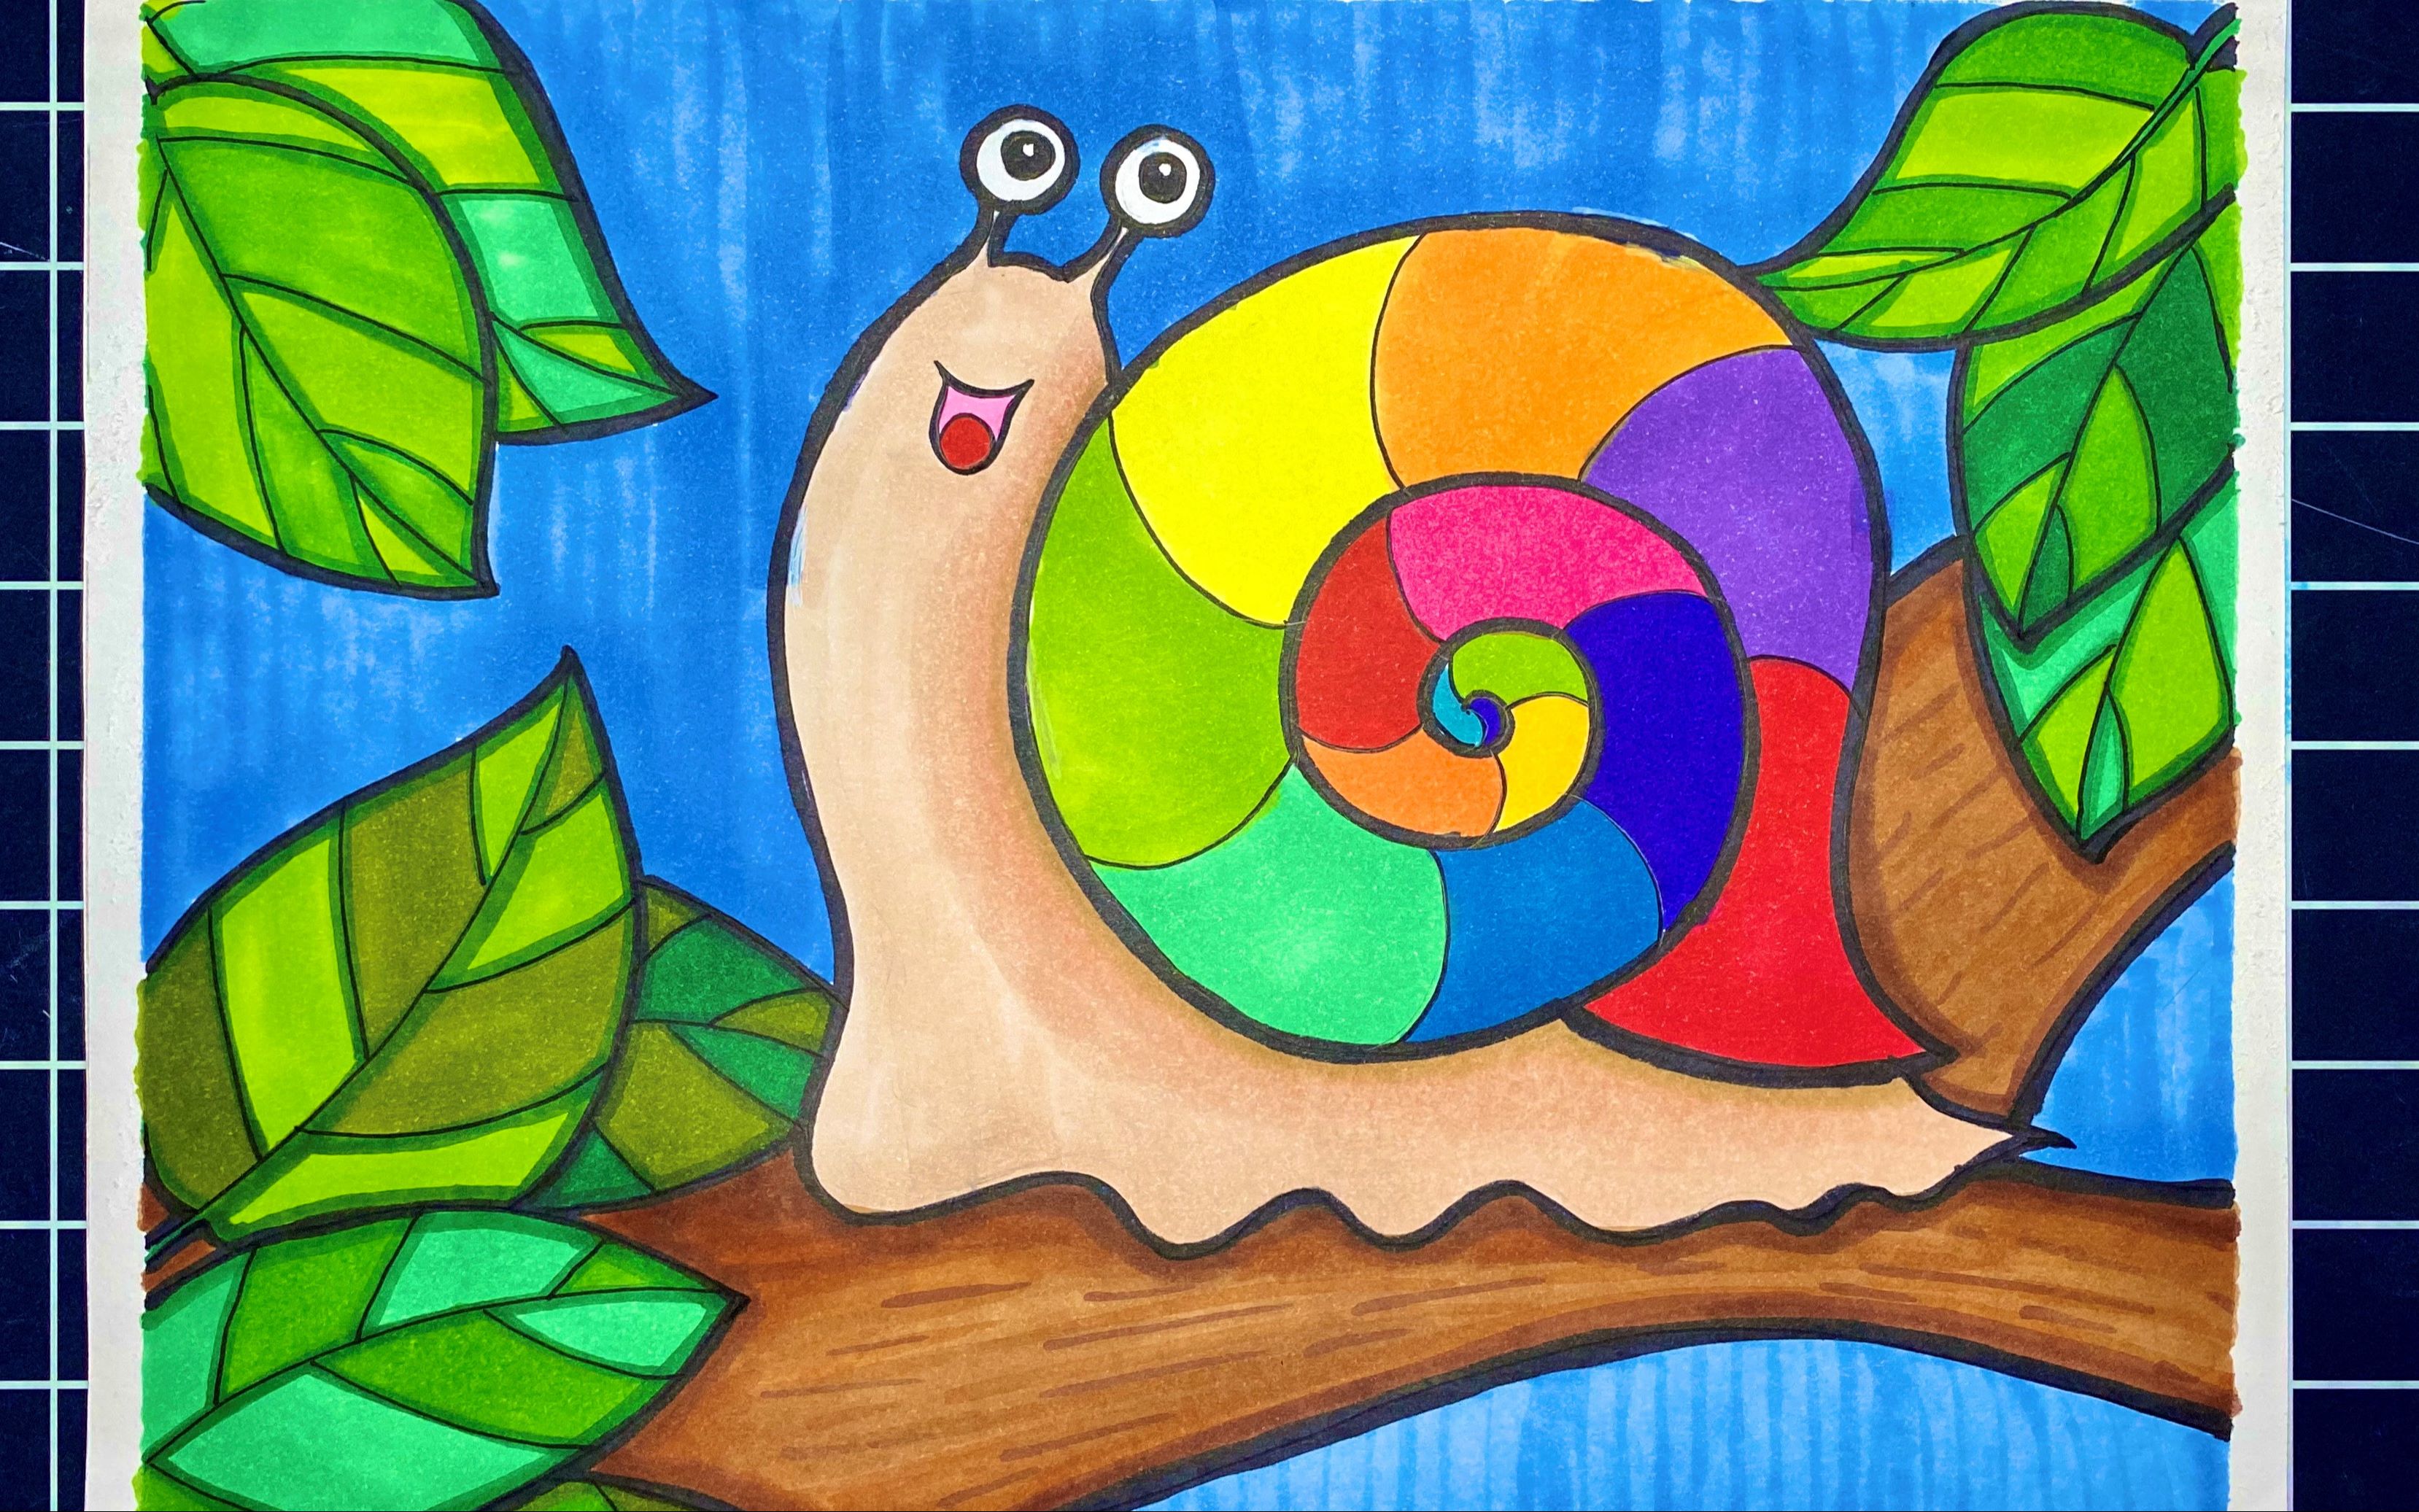 儿童简笔画:爱笑的小蜗牛背着五彩外壳一步一步向前爬,是不是很可爱呀